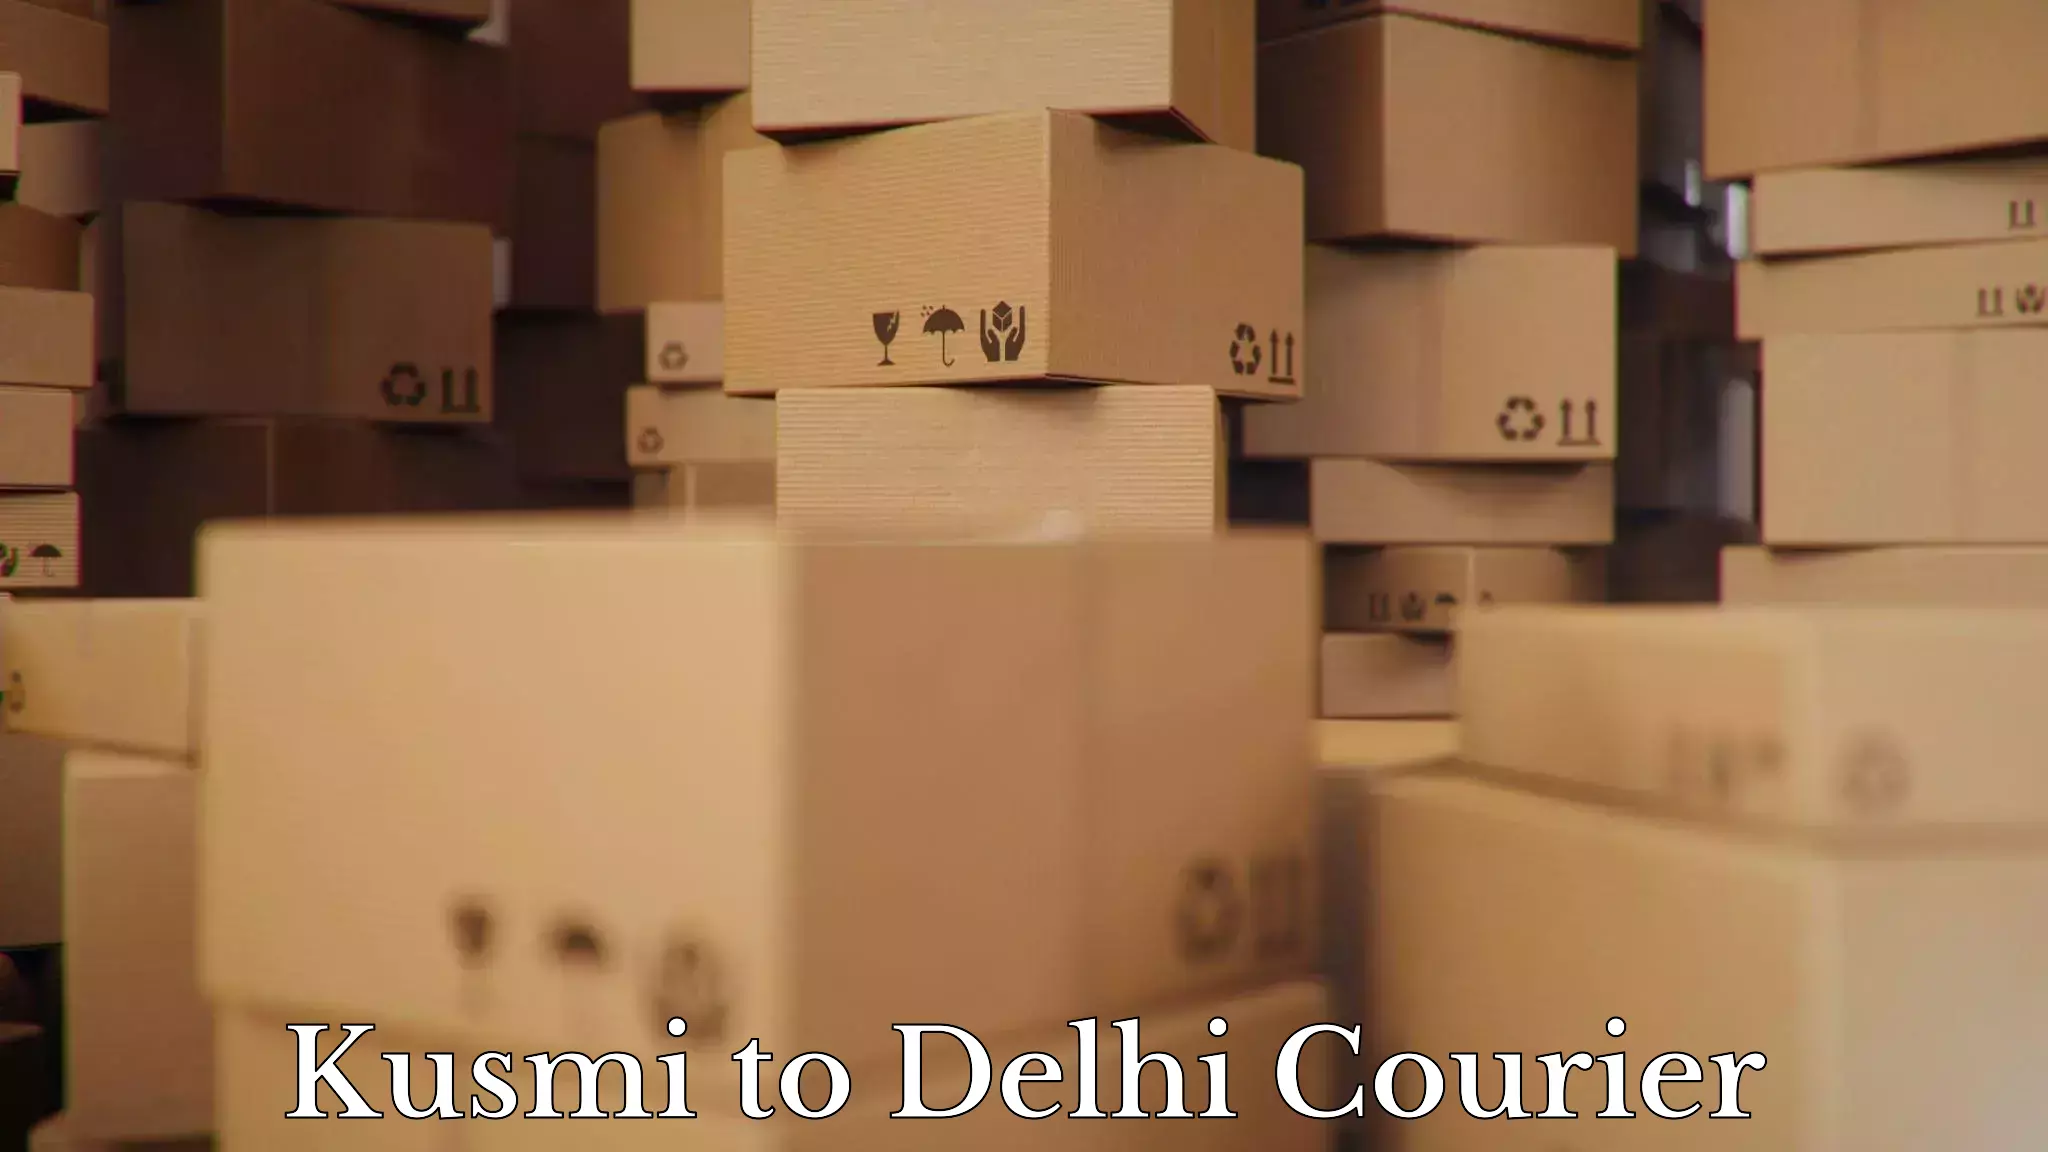 Safe household movers Kusmi to Delhi